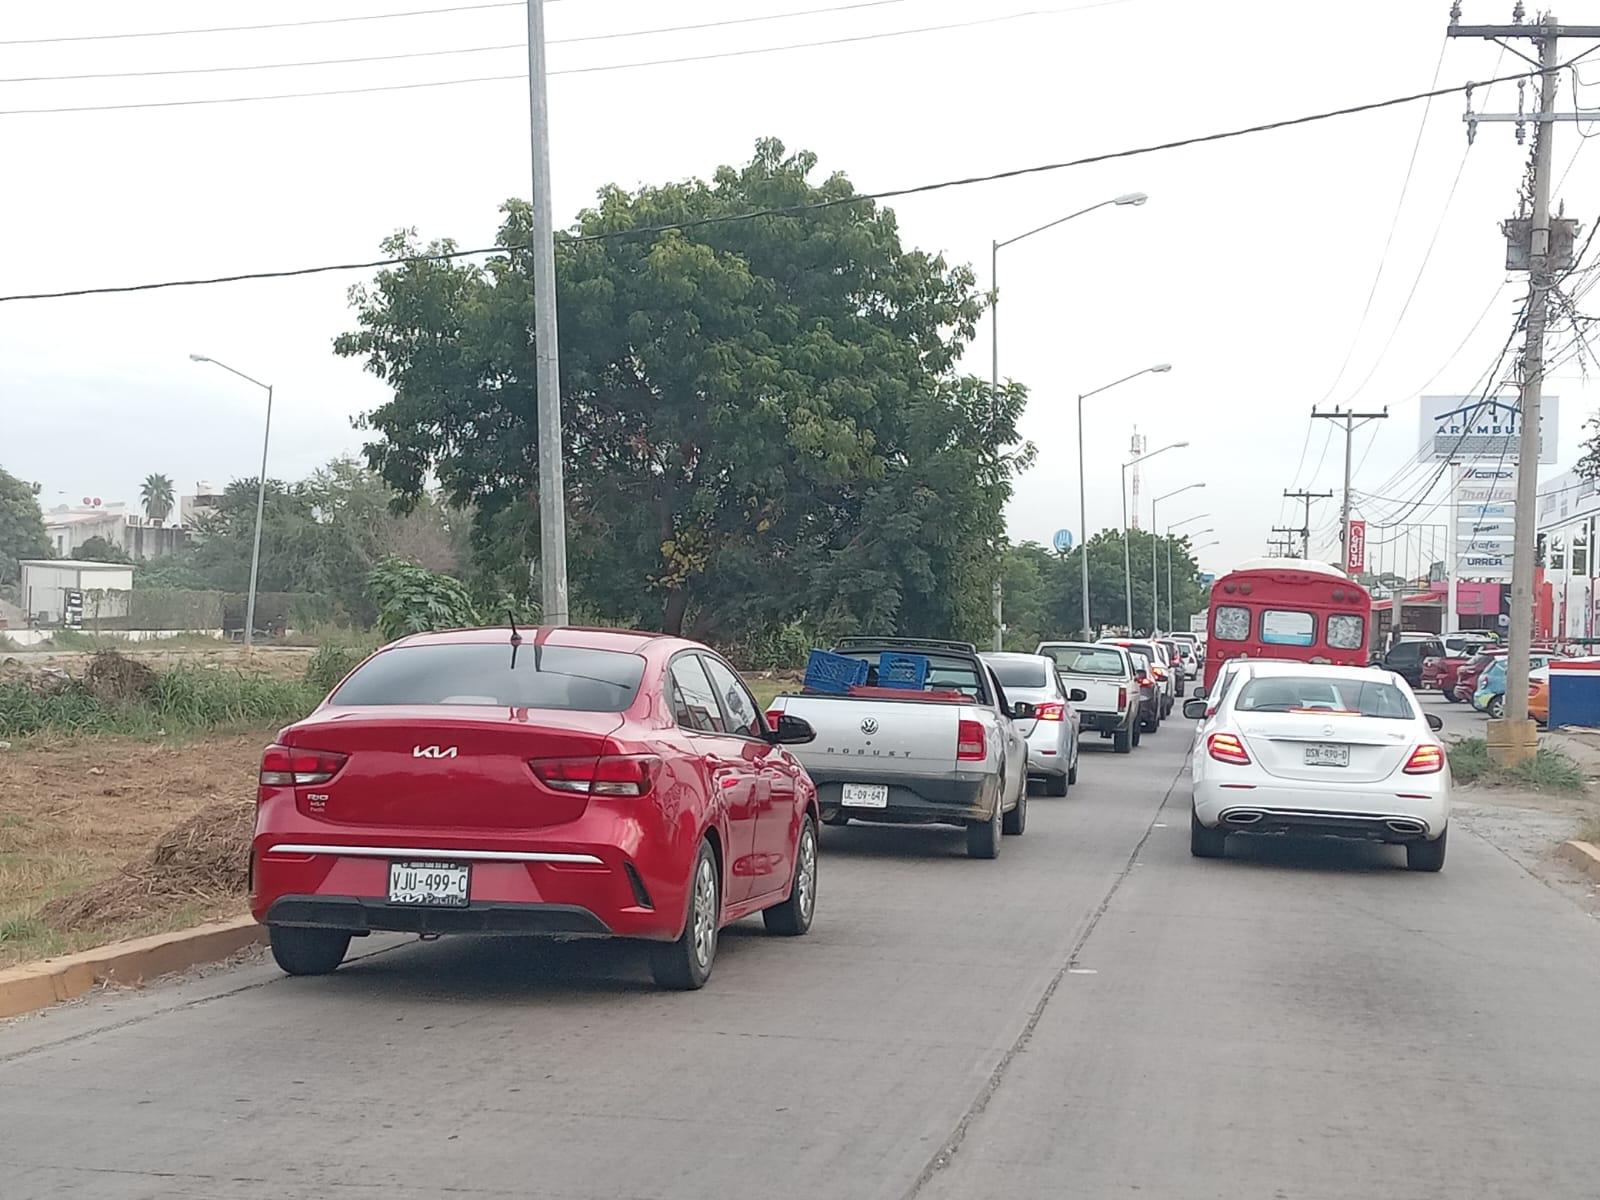 $!Presentan fuerte congestionamiento vehicular tramos de avenidas en Mazatlán